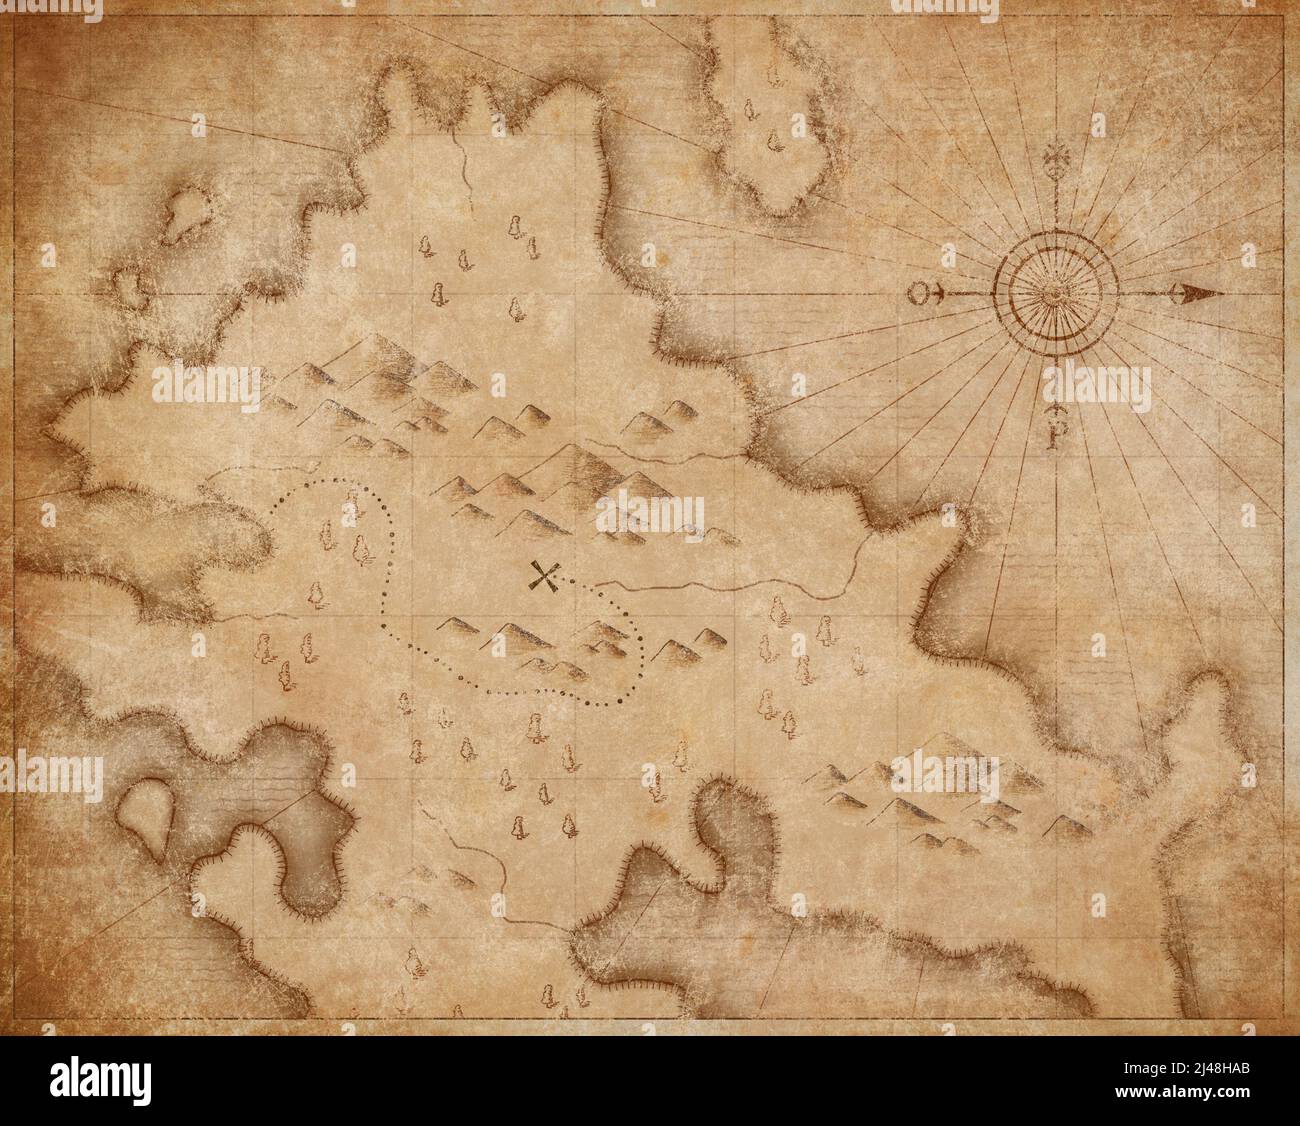 carte des pirates nautiques médiévaux avec la marque de chemin des trésors cachés Banque D'Images